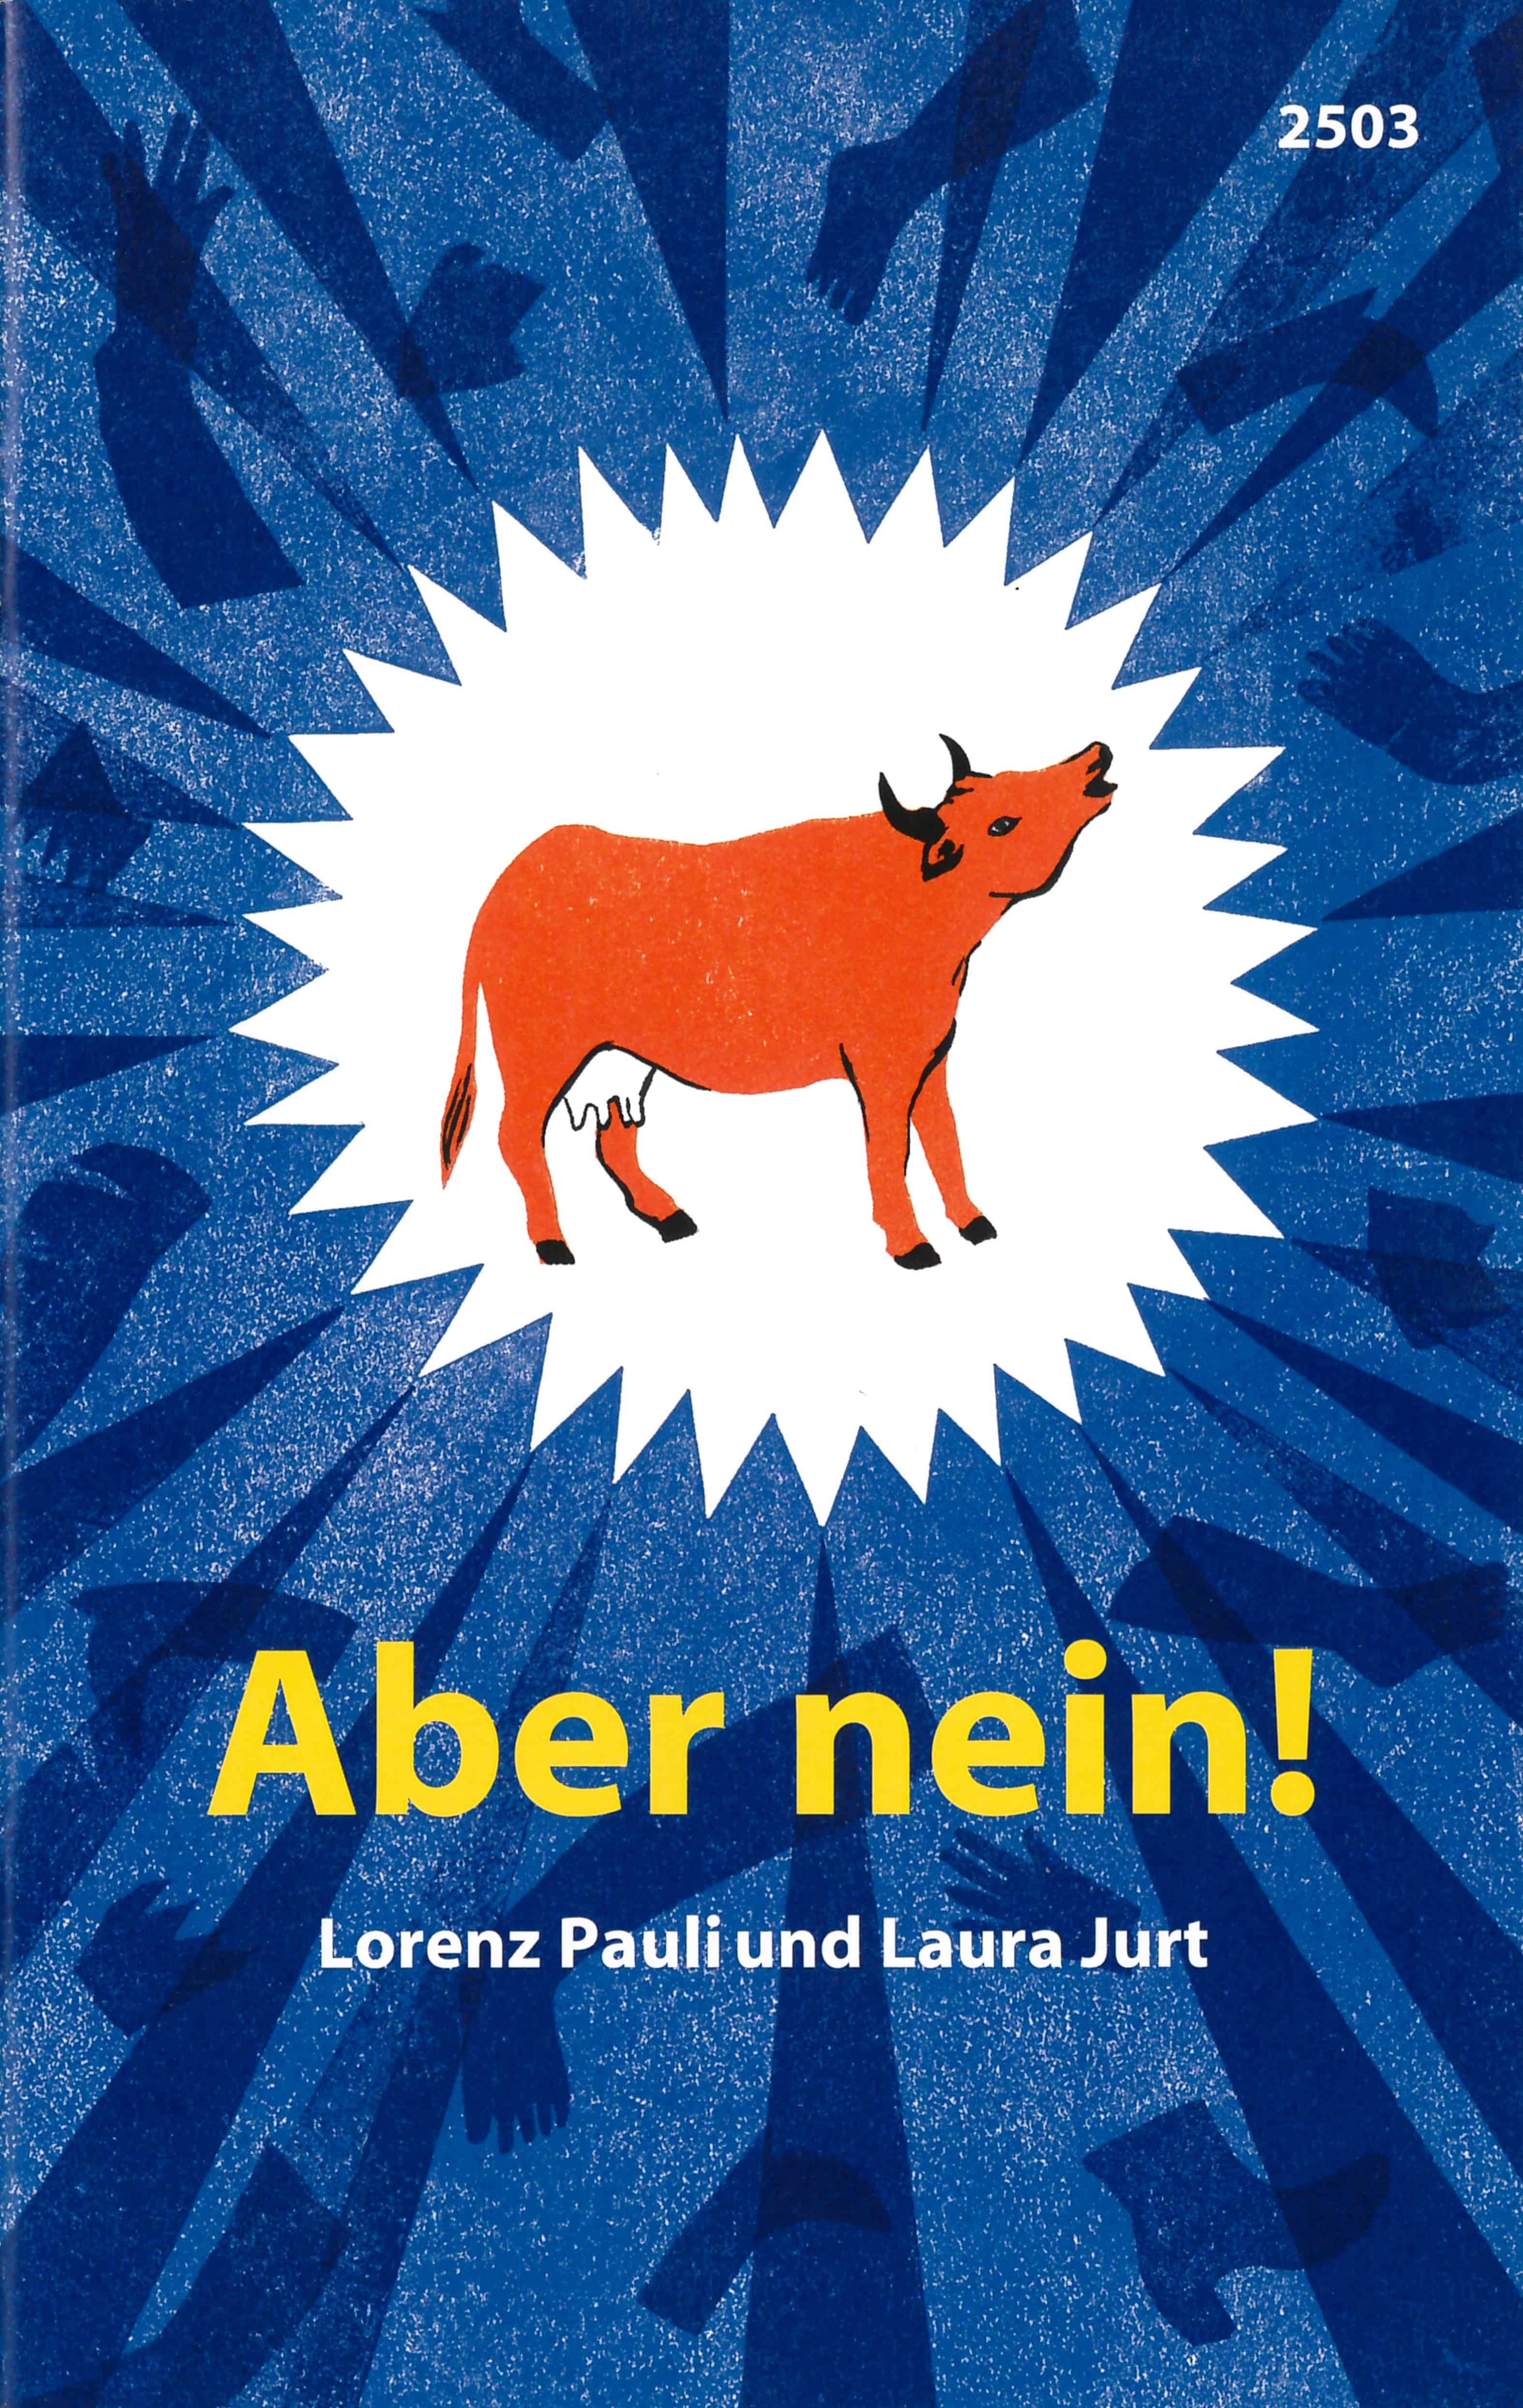 Aber nein!, ein Kinderbuch von Lorenz Pauli, Illustration von Laura Jurt, SJW Verlag, Sprachspiele